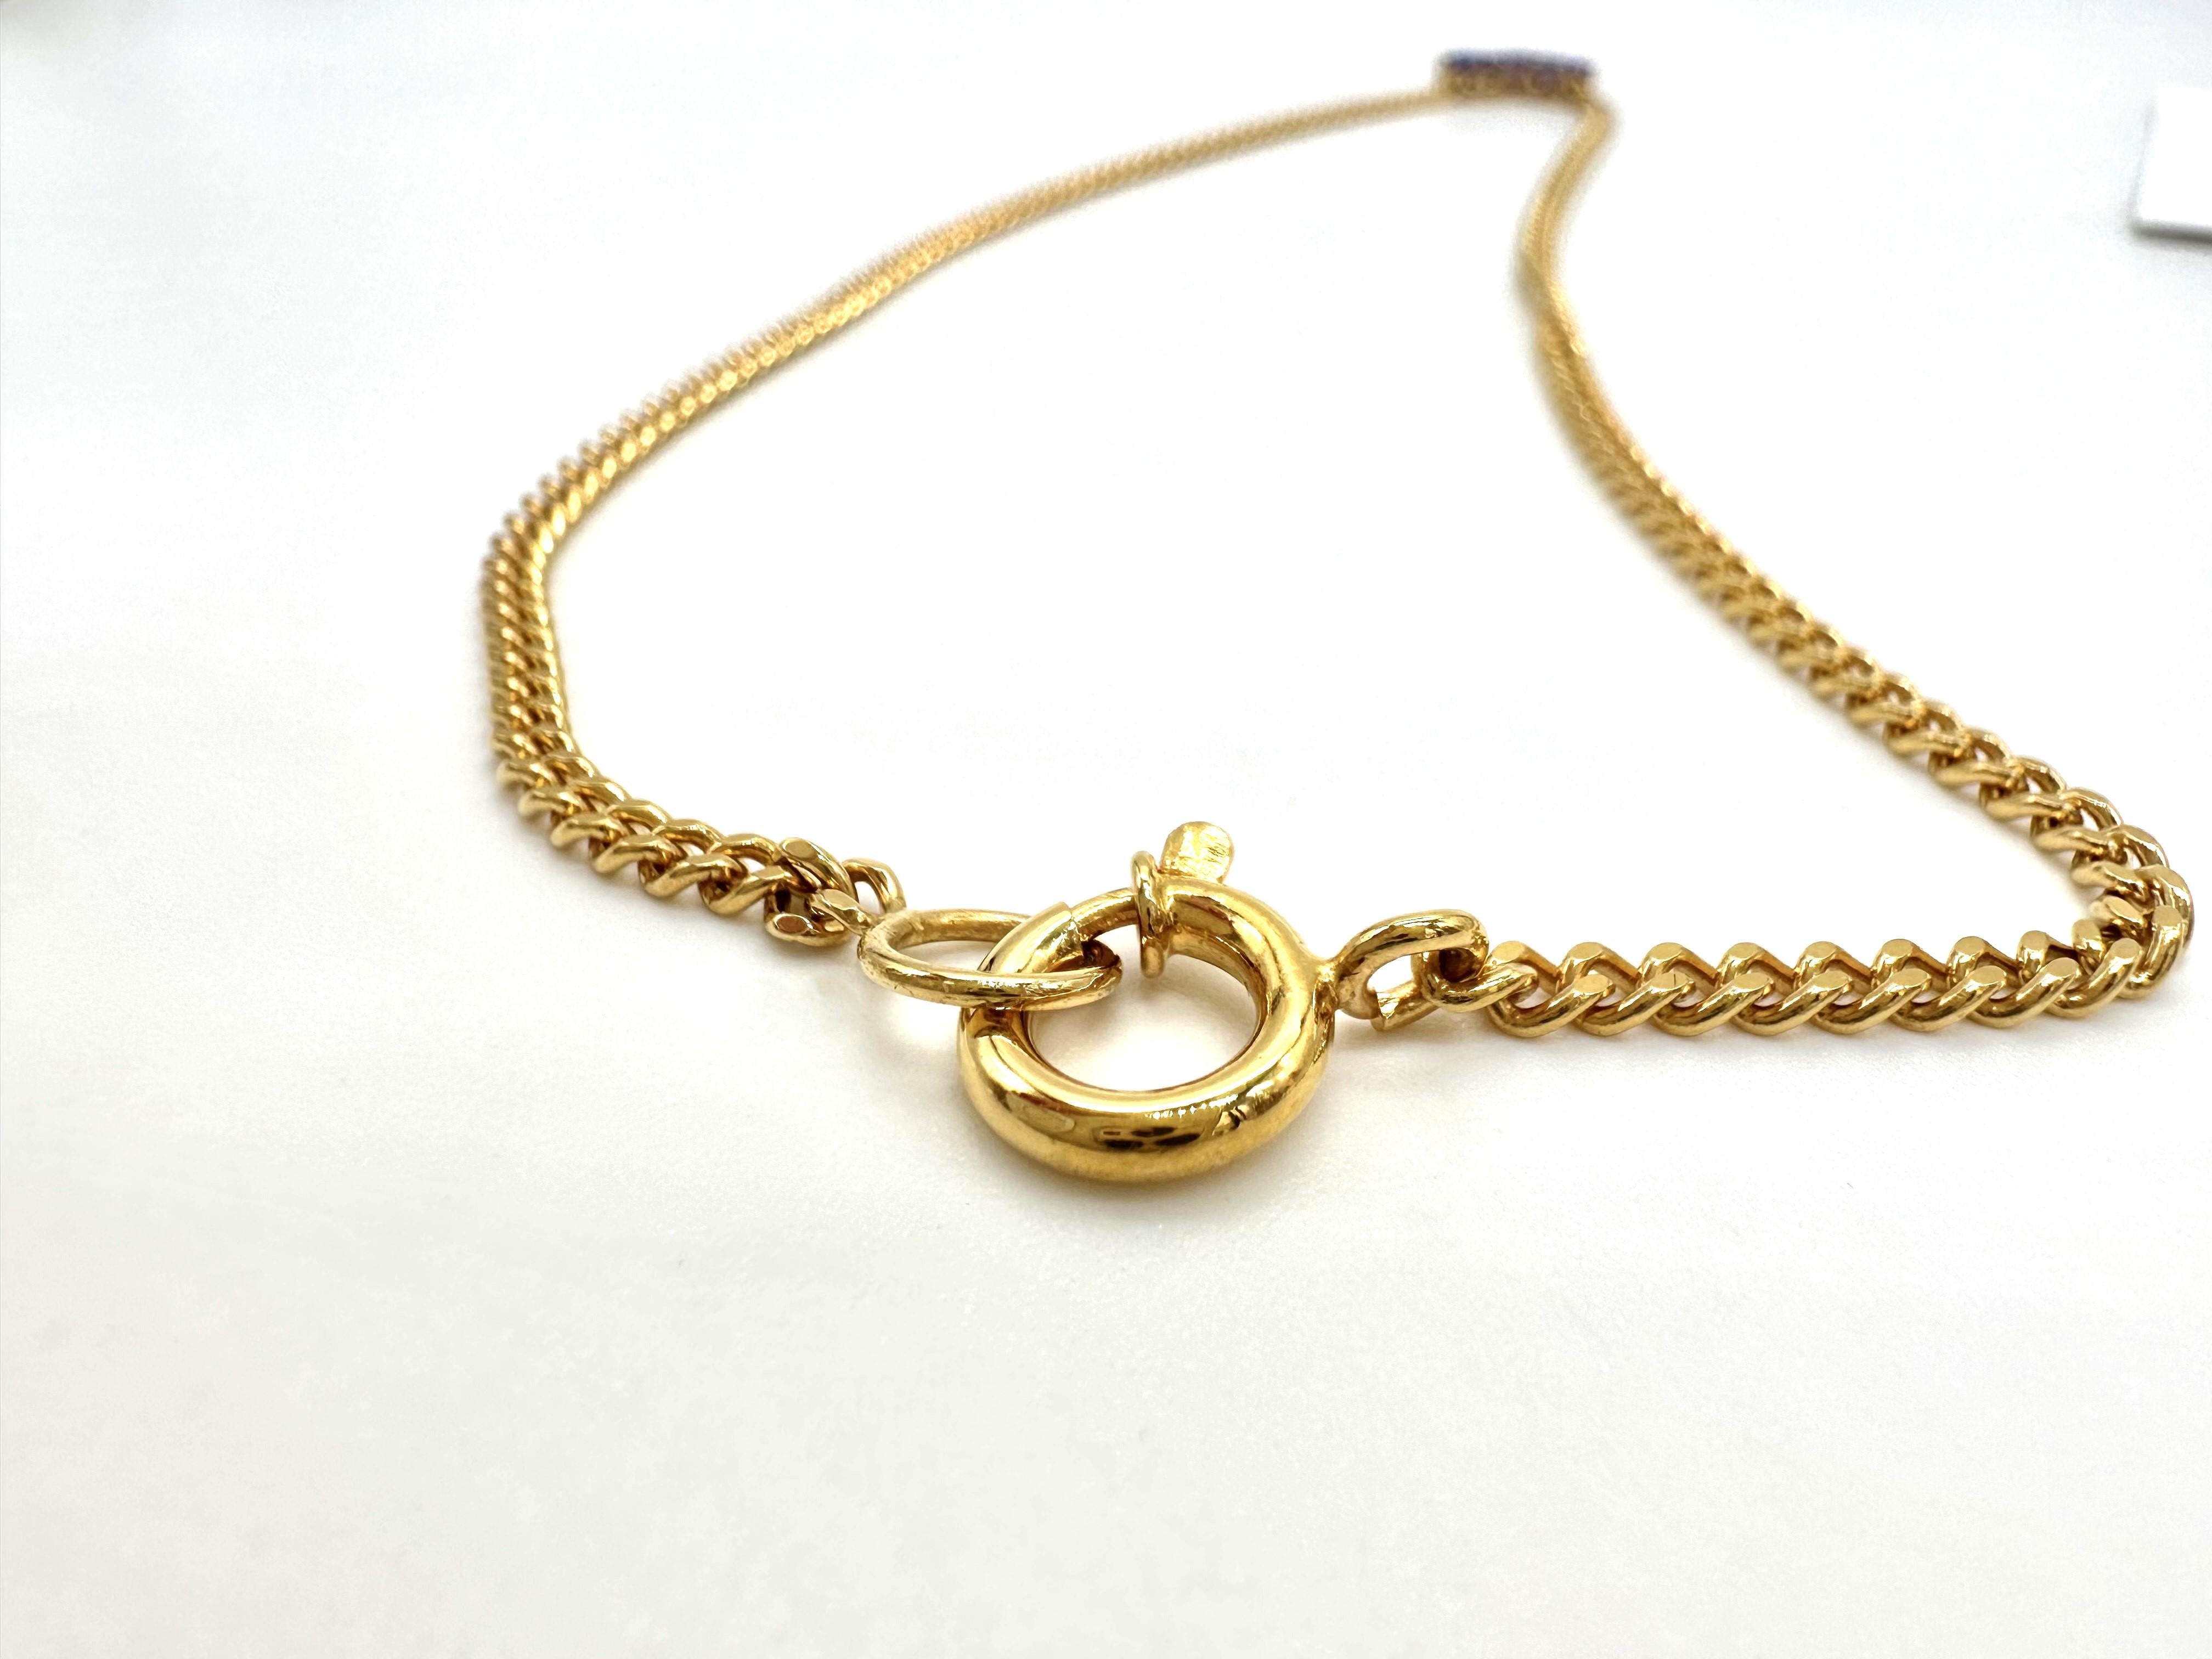 Ce collier a été fabriqué en 19,2k GOLD (carats) également connu sous le nom de 800 gold (traditionnellement utilisé au Portugal), est poinçonné par la Monnaie et porte un poinçon MISSIAN JEWELERY.
Les tanzanites ont été acquises à Idar-Oberstein